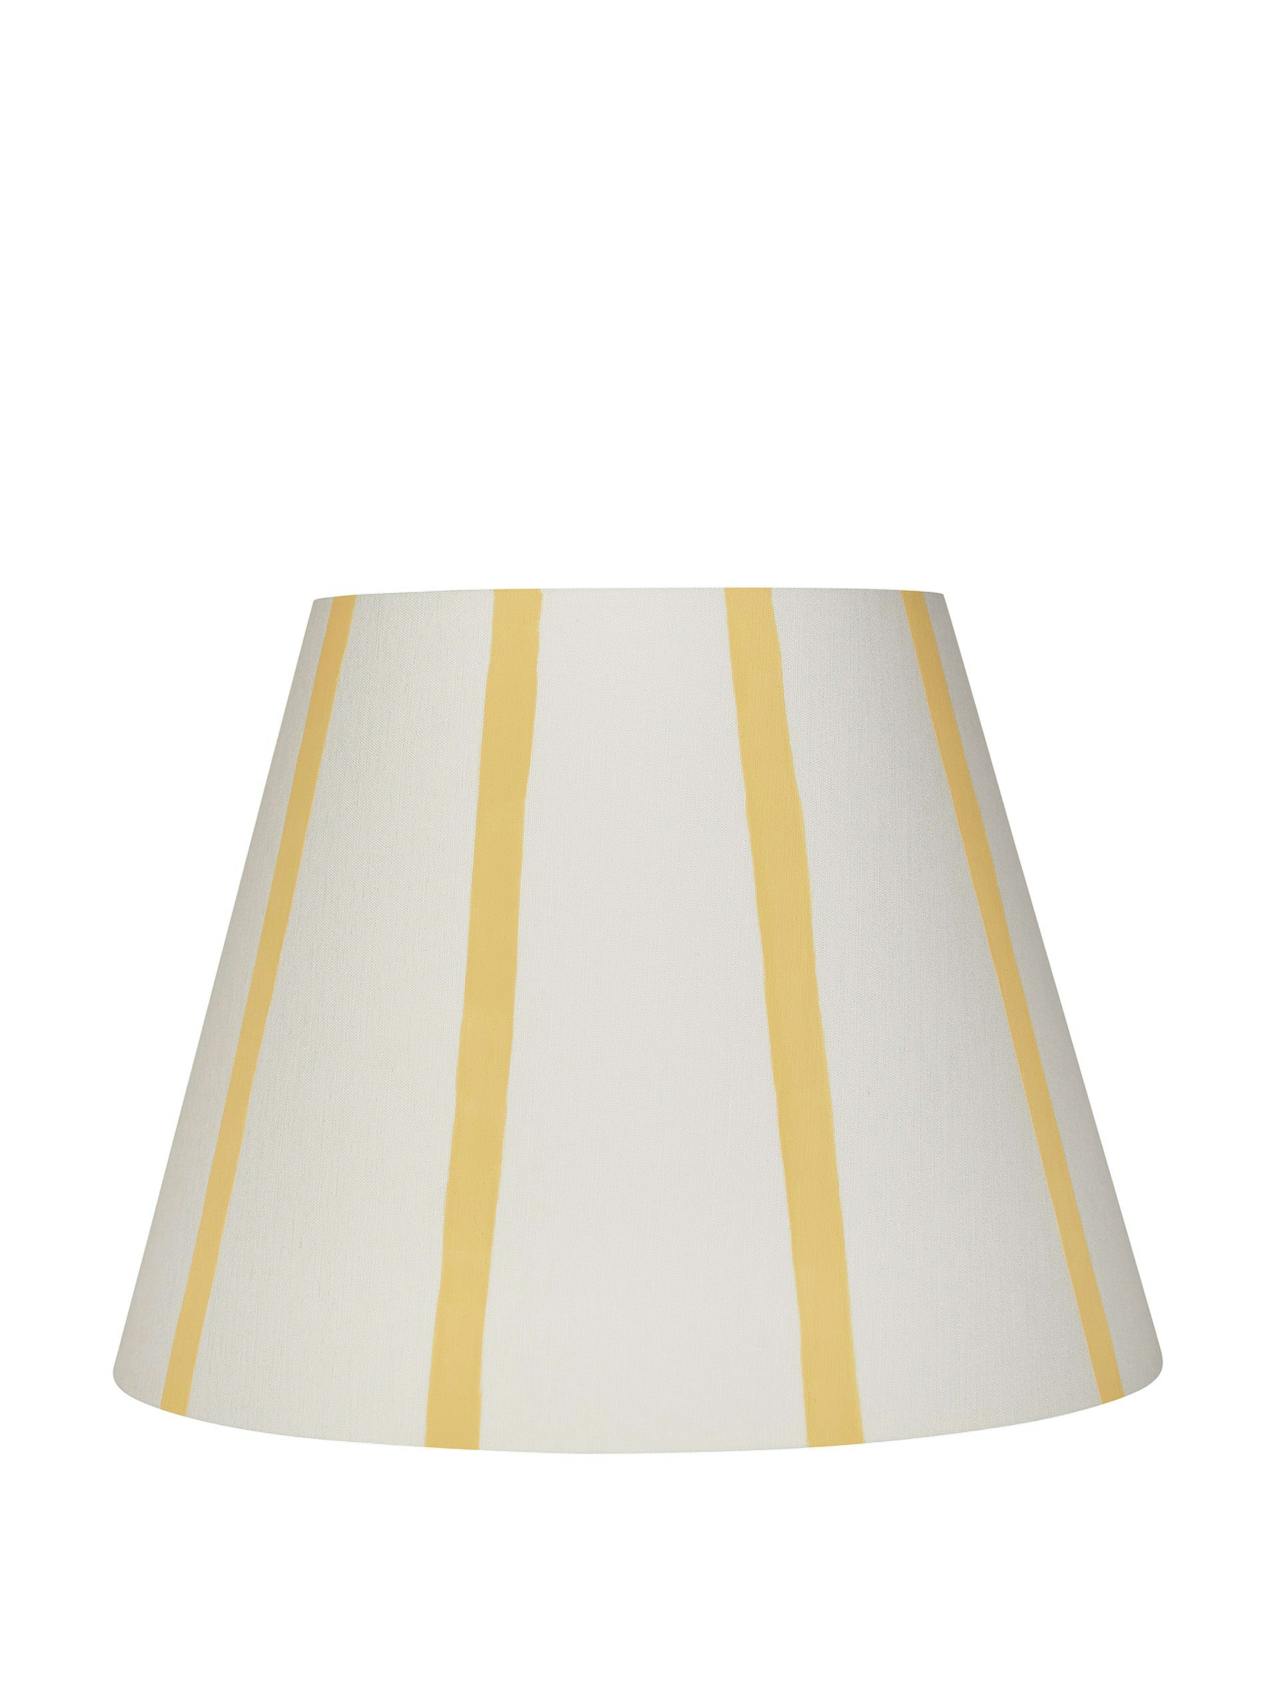 Yellow stripe lampshade